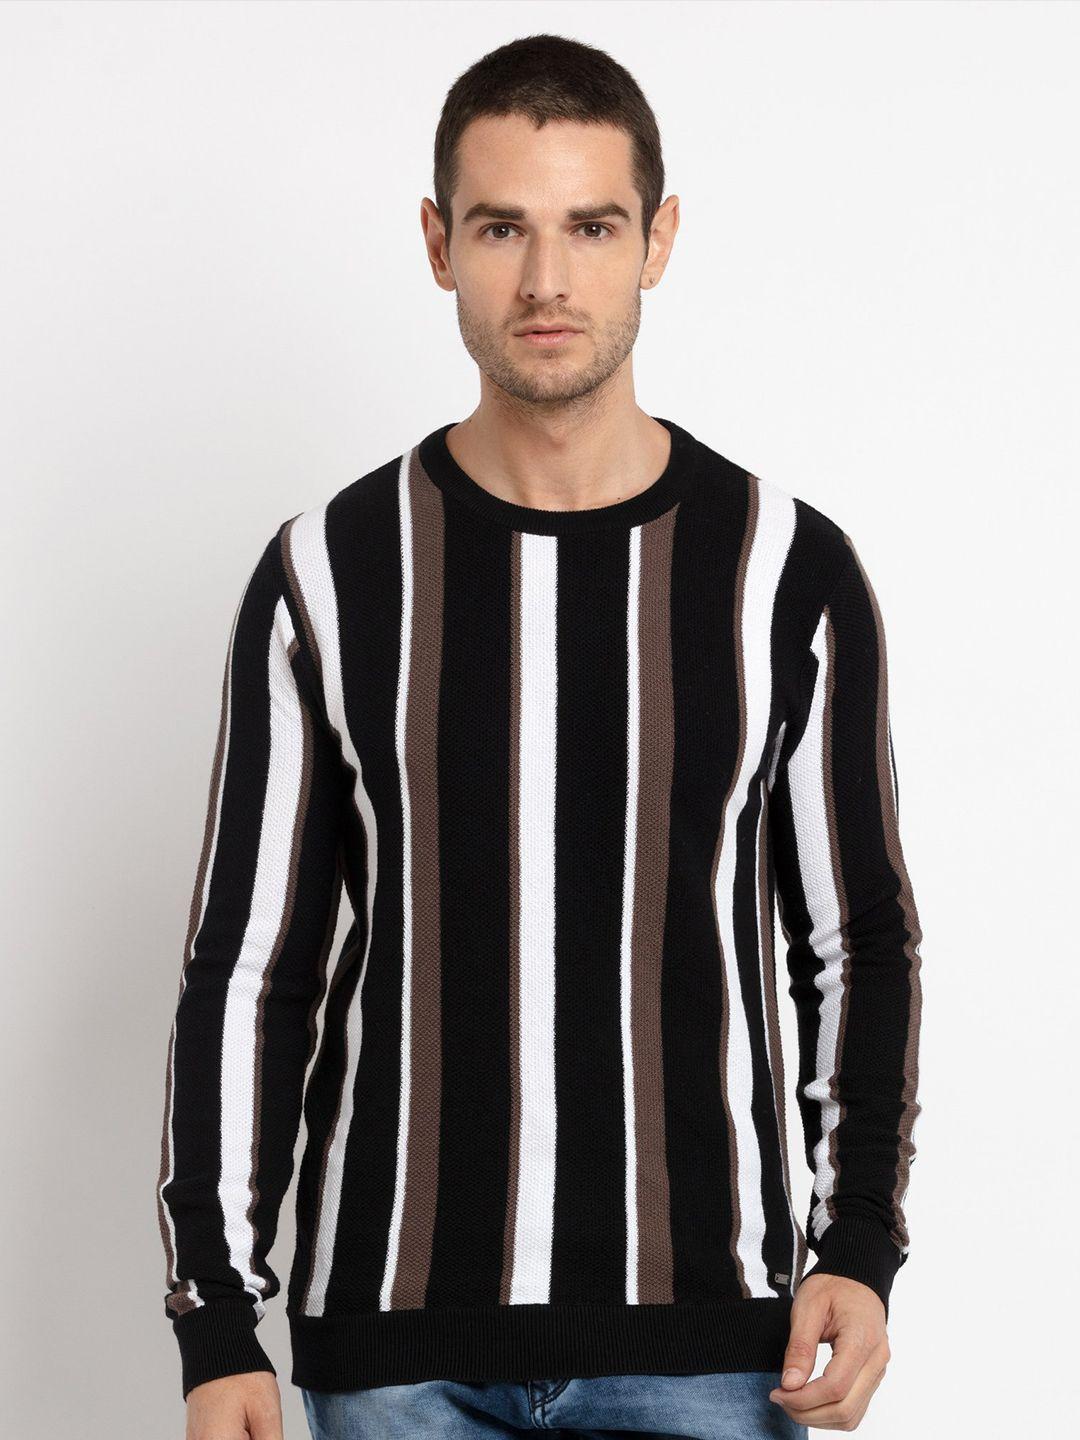 status quo men black striped pullover sweater